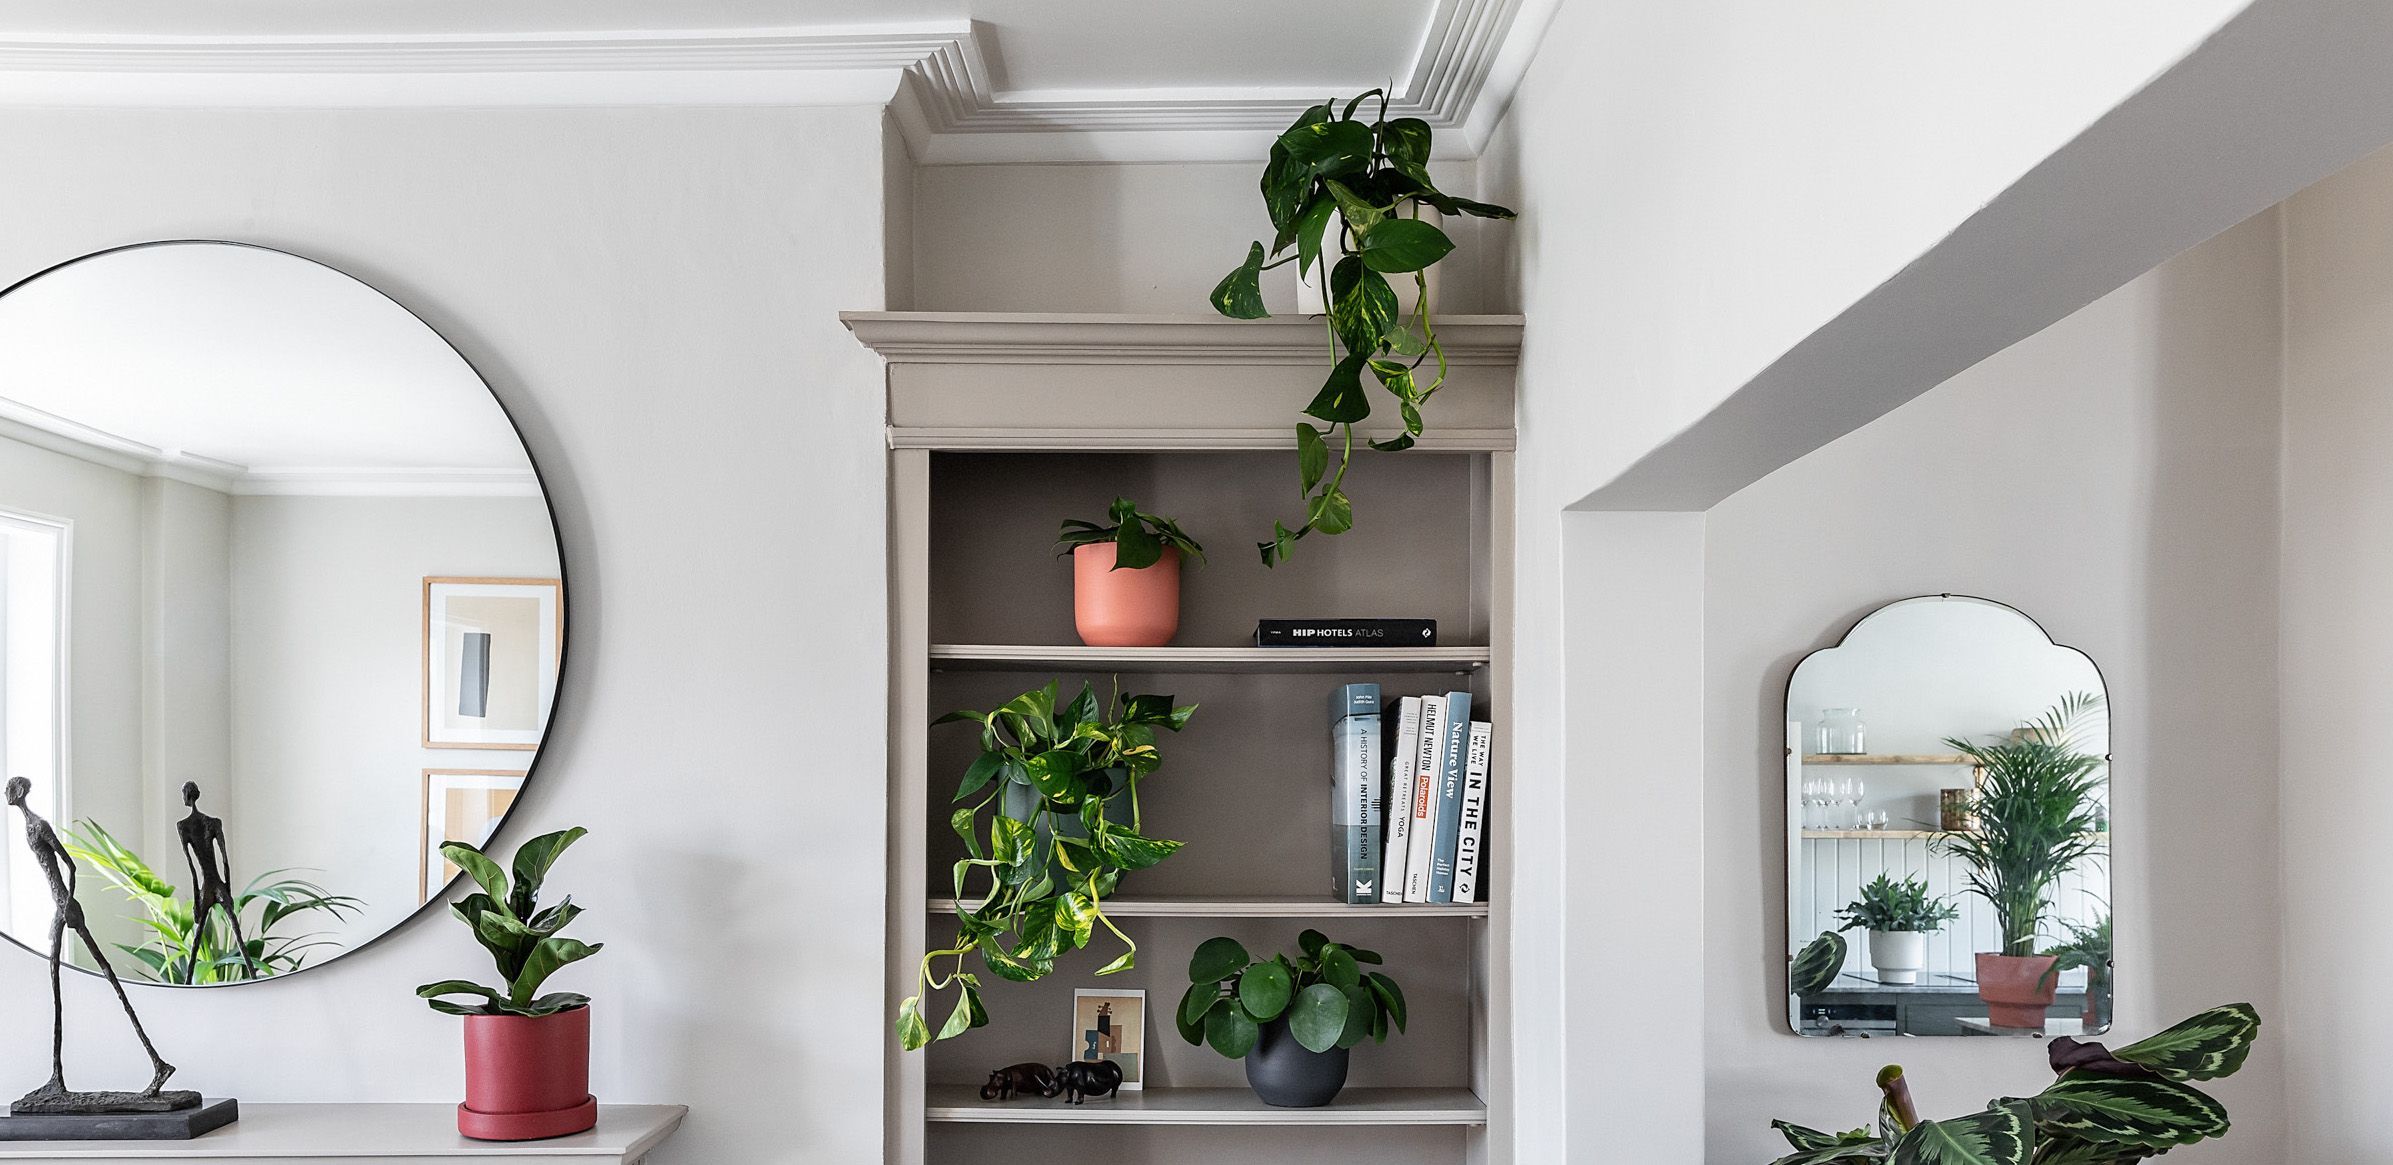 5 Ways Designers Use Indoor Plant Arrangements To Make…